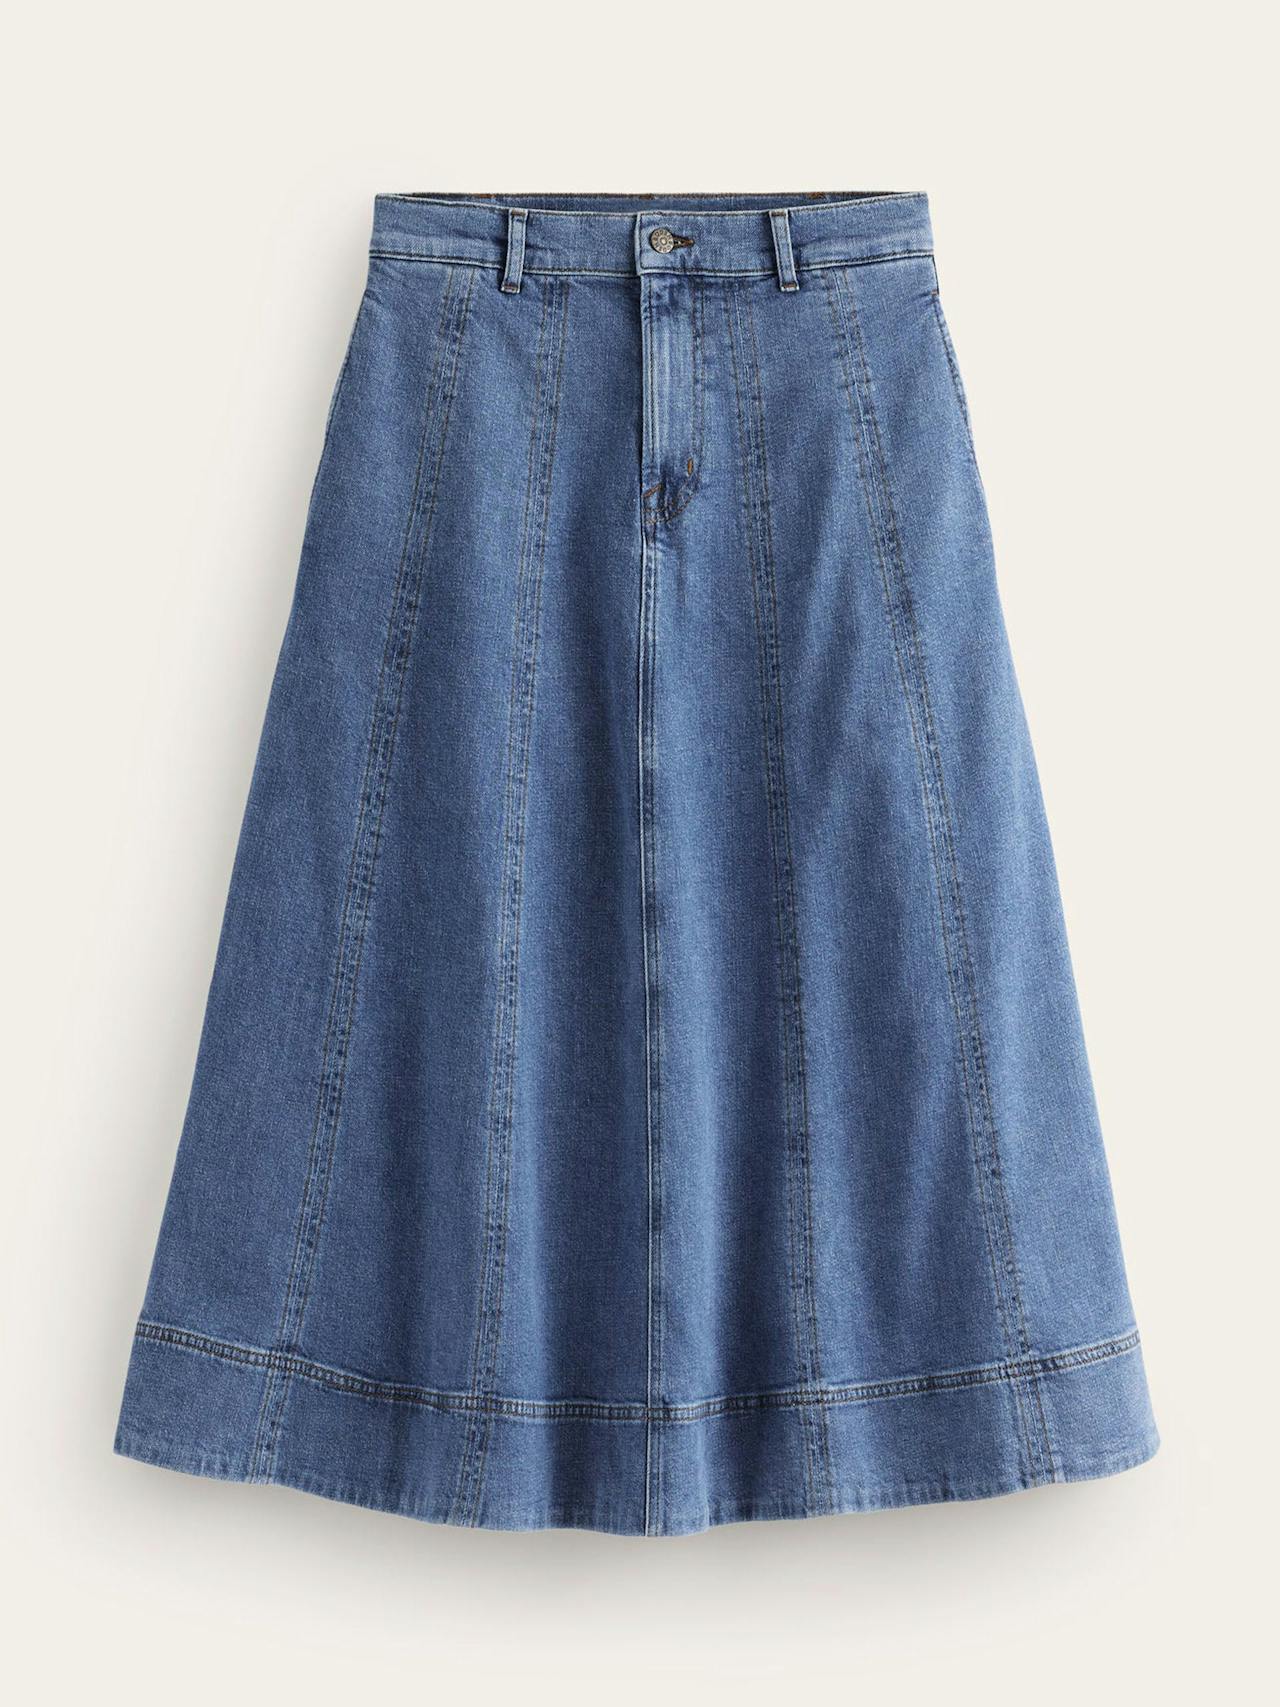 Panelled full denim skirt